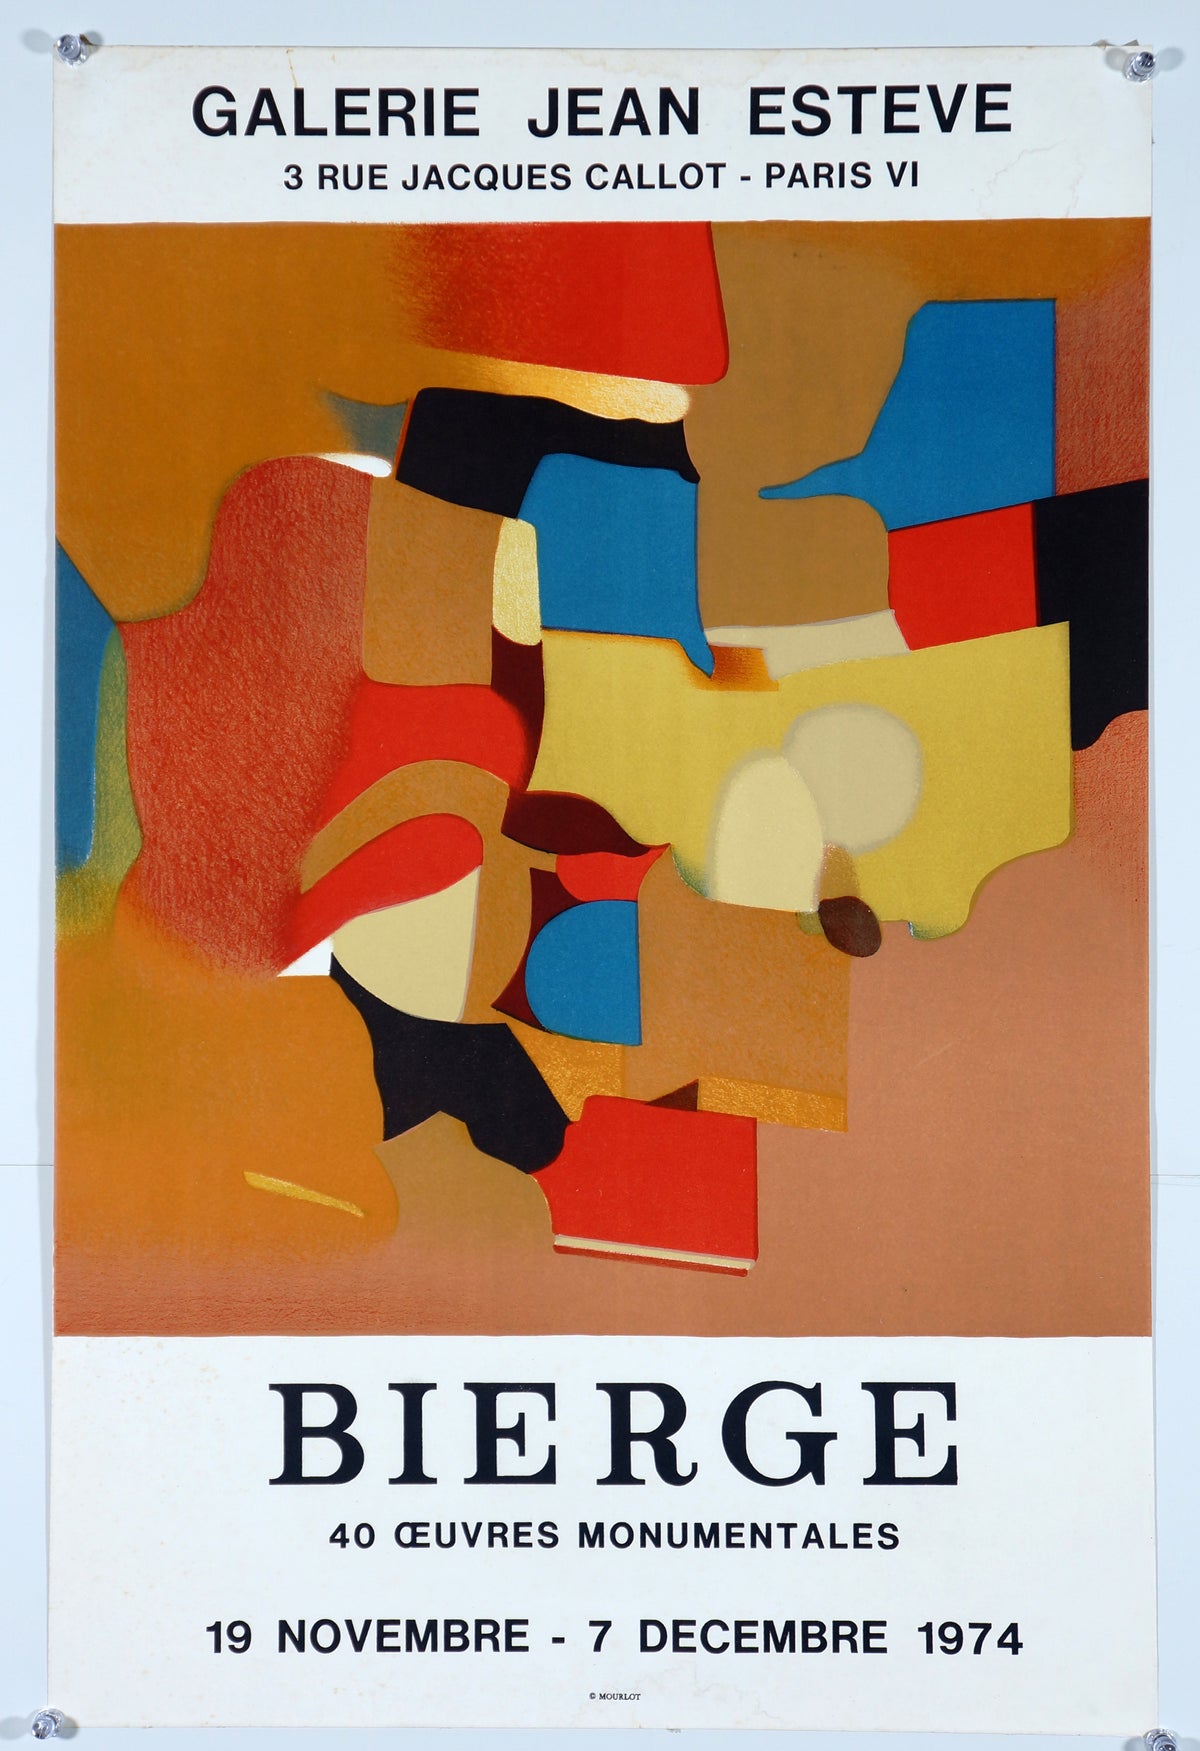 Bierge- Galerie Jean Esteve - Authentic Vintage Poster